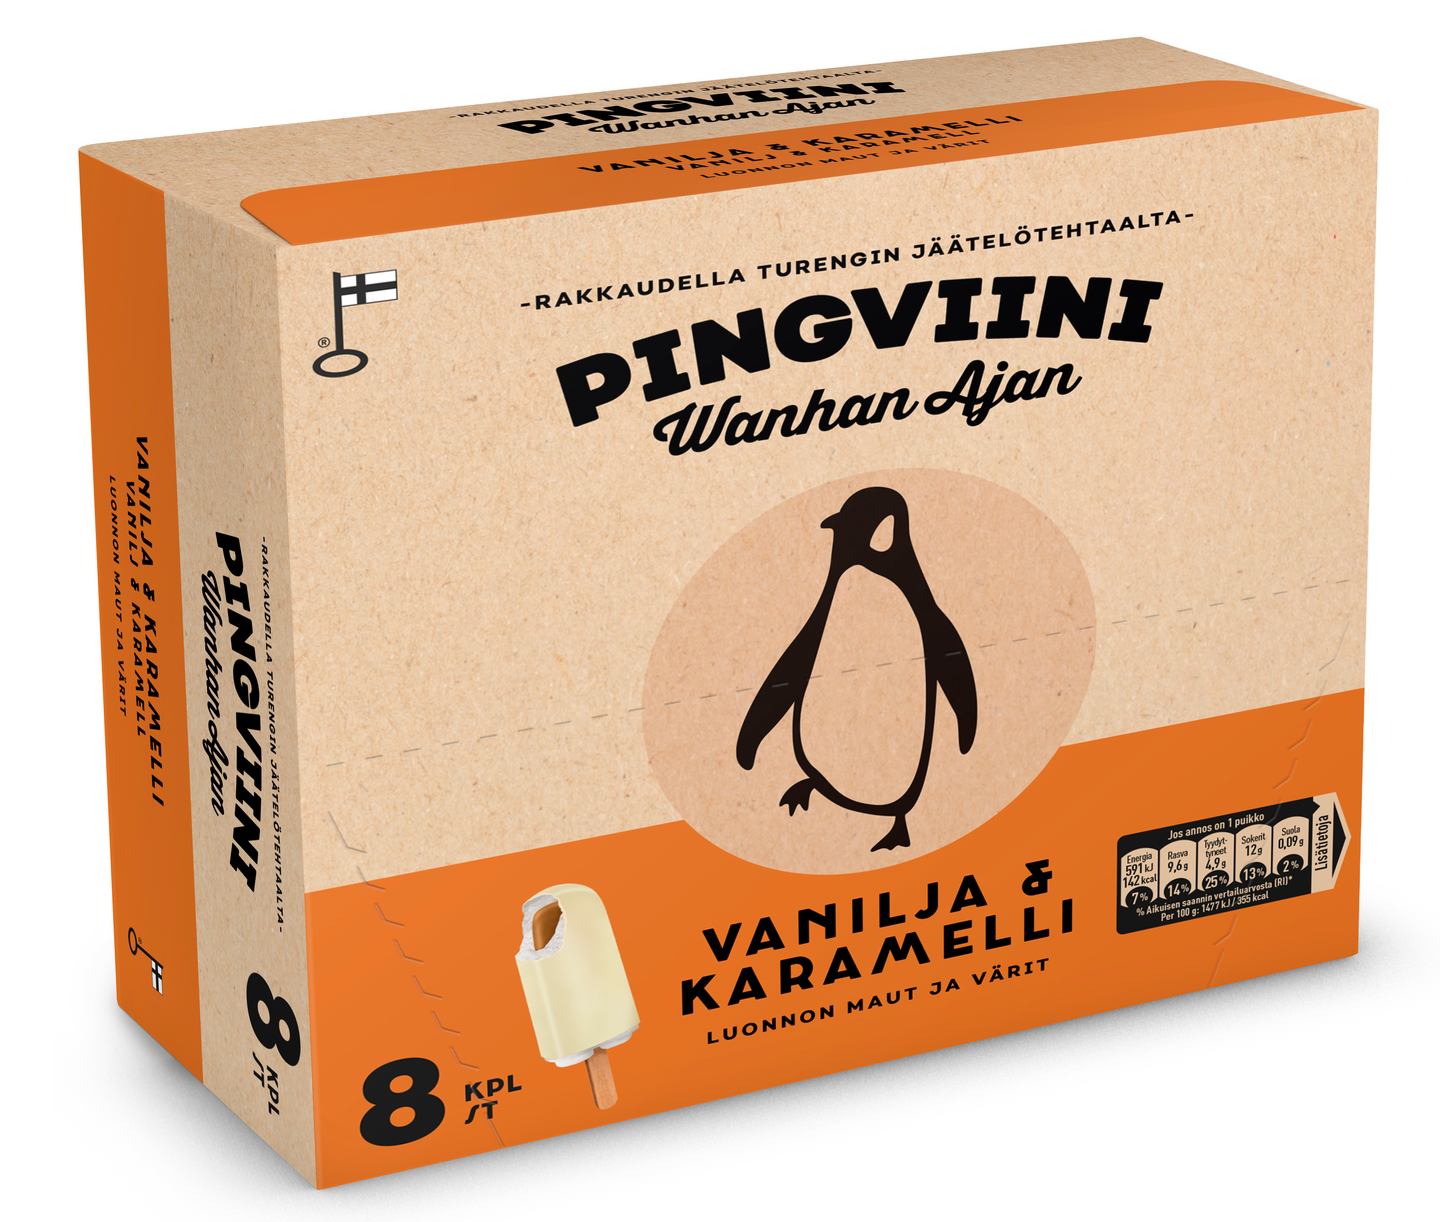 Pingviini Wanhan Ajan Vanilja & Karamelli kermajäätelöpuikko monipakkaus 8x40g